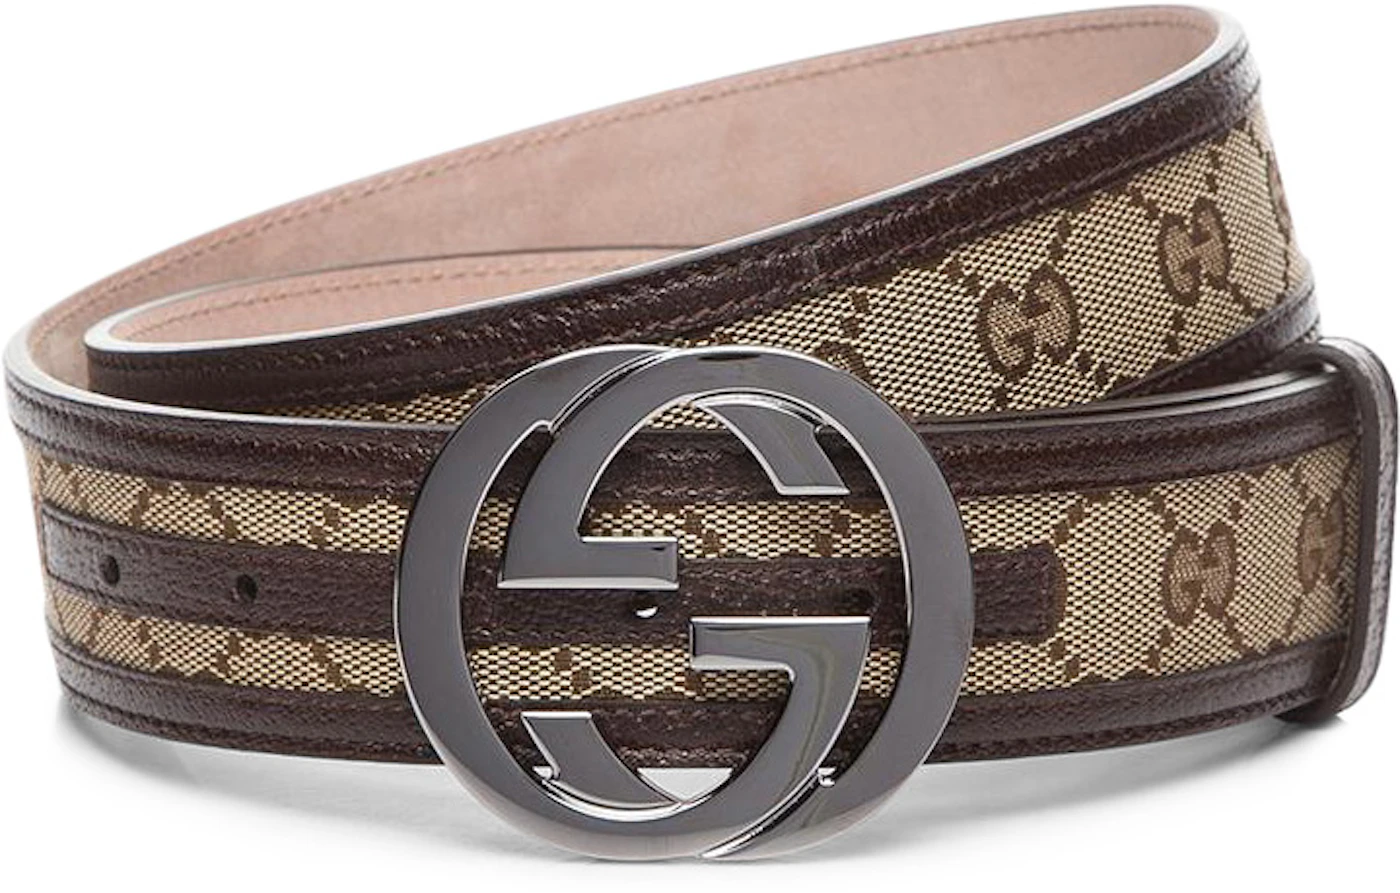 Gucci Interlocking G Belt Supreme GG Striped Leather Dark Brown/Beige ...